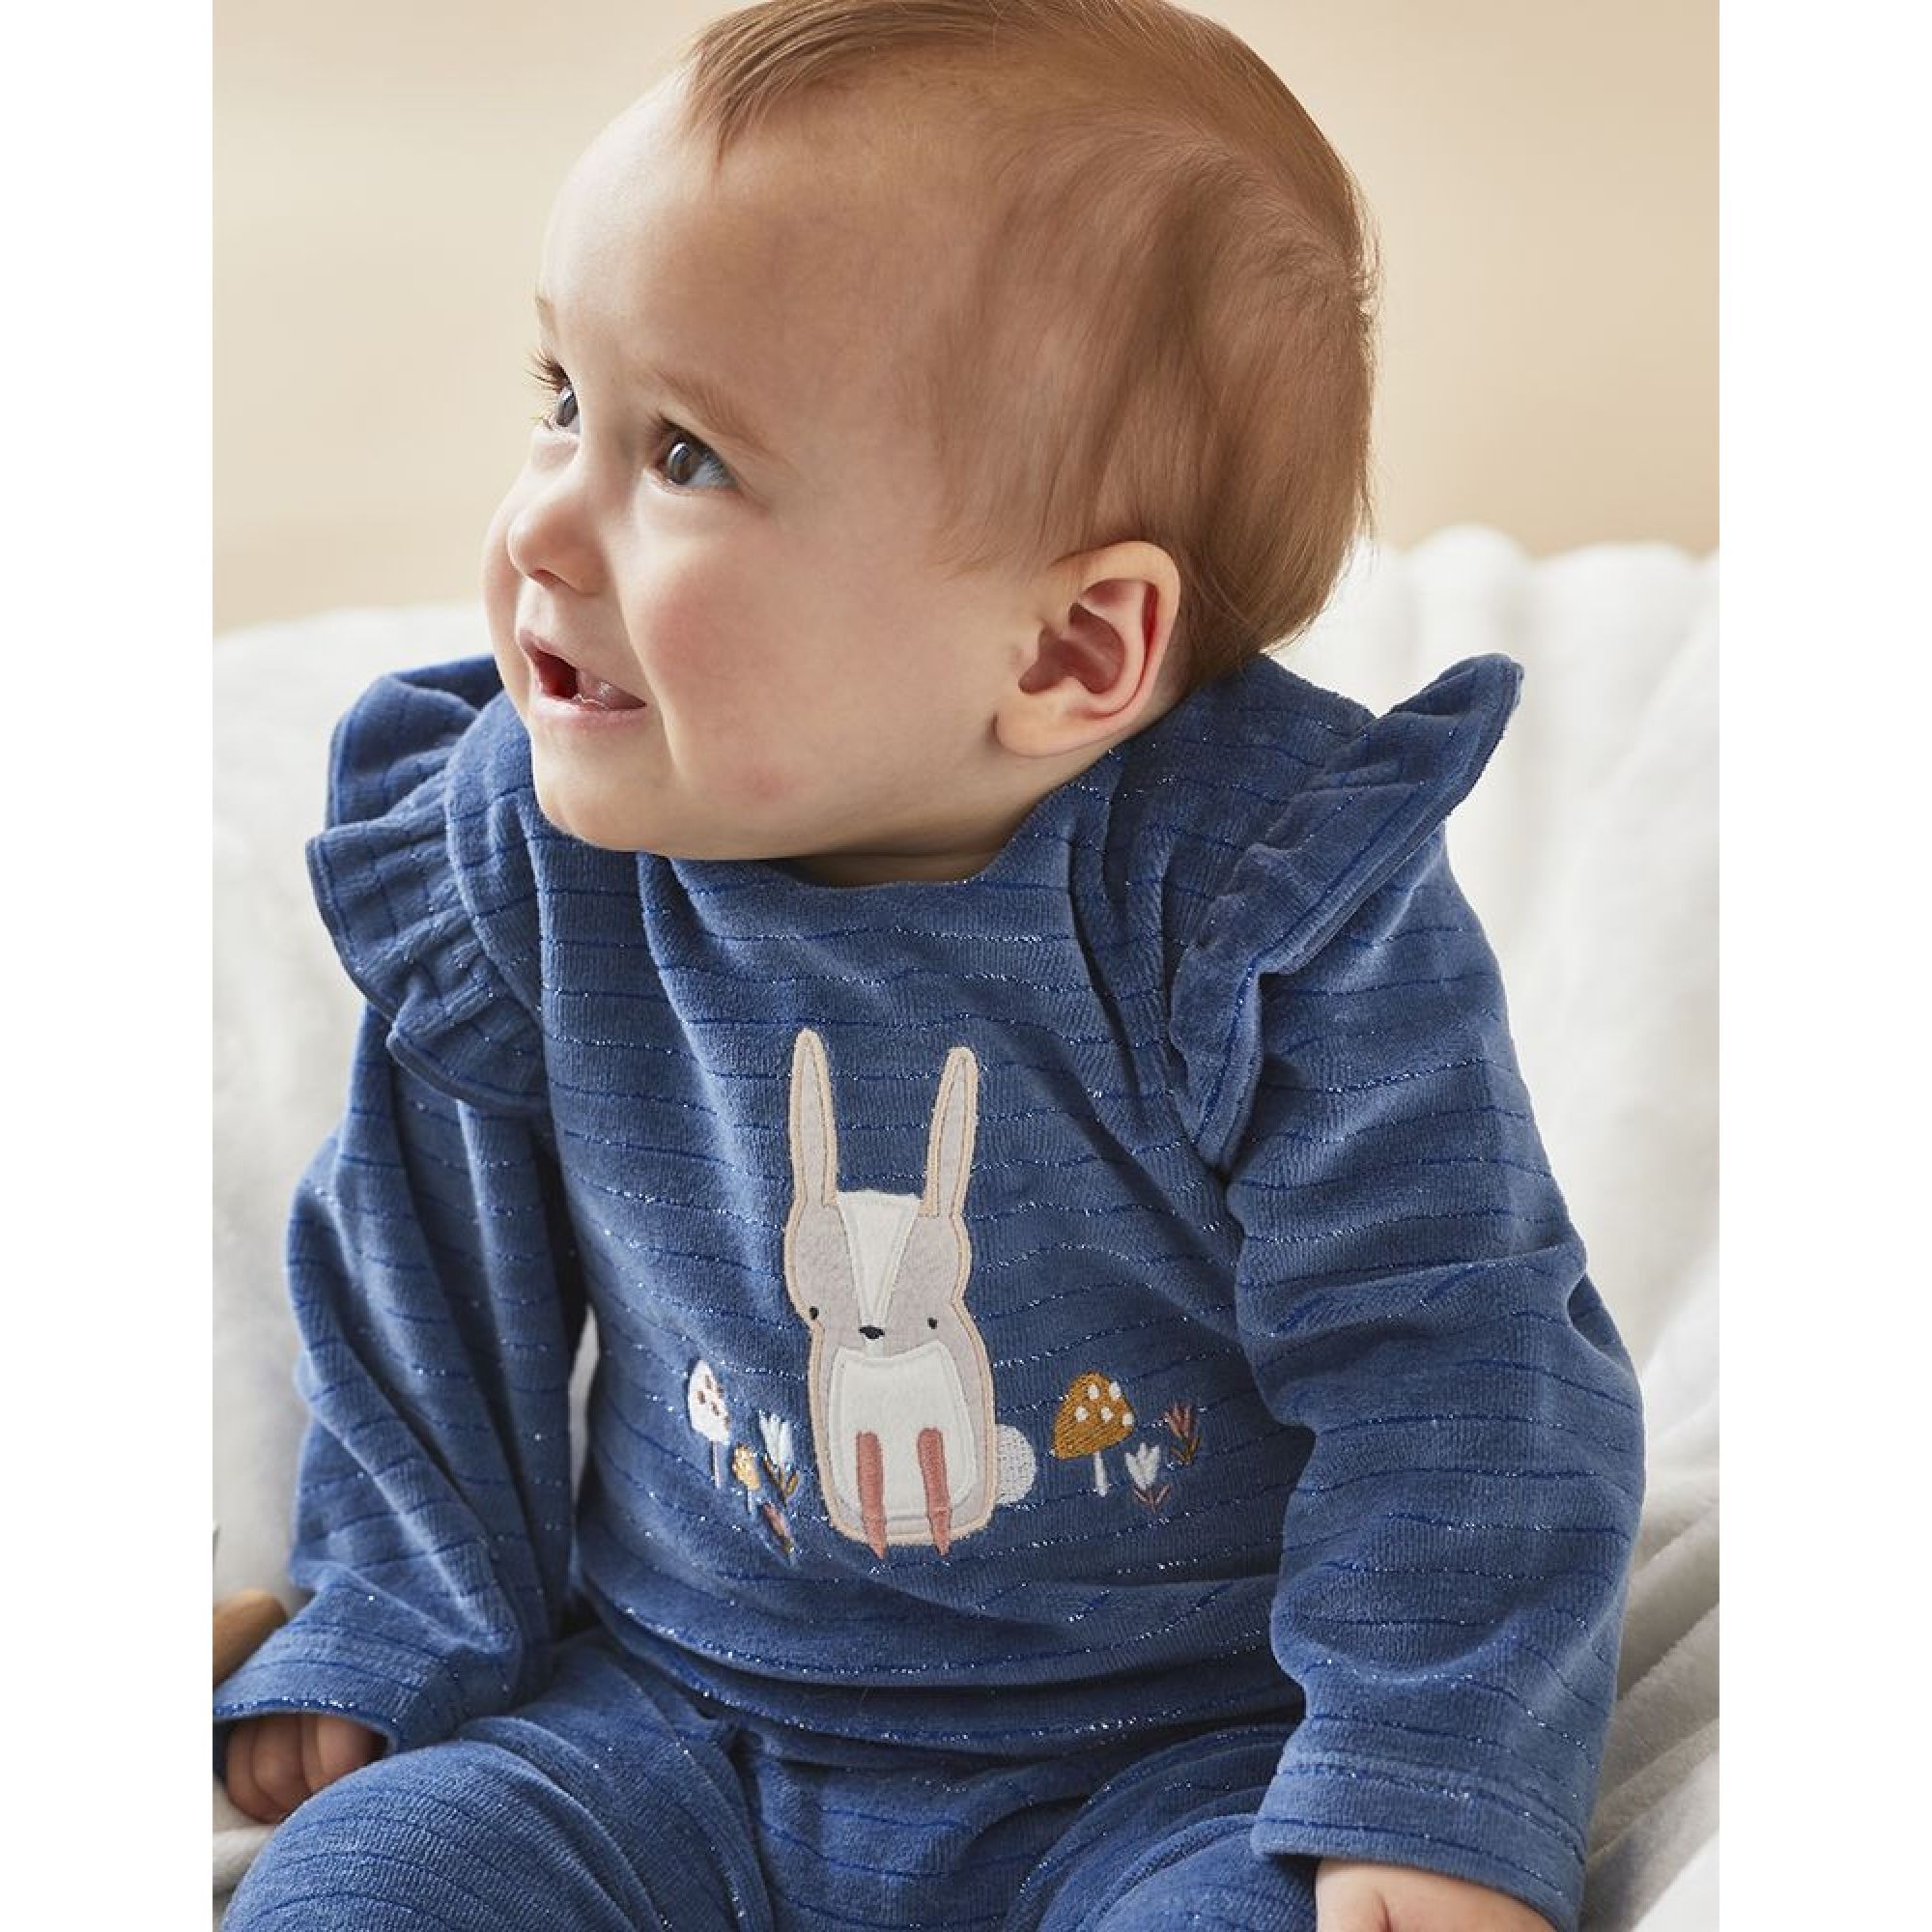 Pyjama bébé naissance dors bien 1 mois personnalisé avec prénom